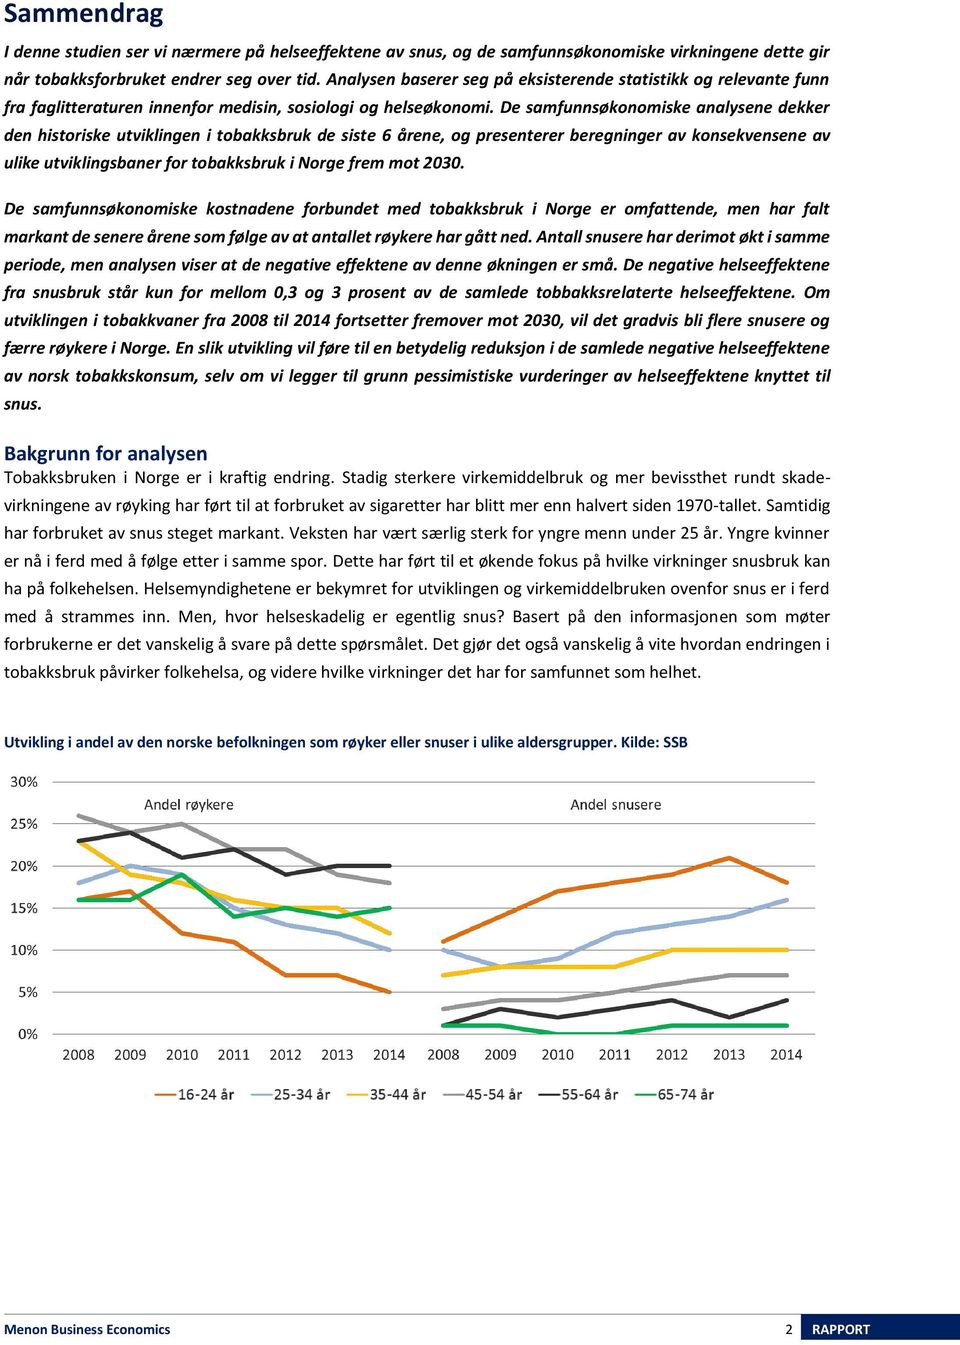 De samfunnsøkonomiske analysene dekker den historiske utviklingen i tobakksbruk de siste 6 årene, og presenterer beregninger av konsekvensene av ulike utviklingsbaner for tobakksbruk i Norge frem mot